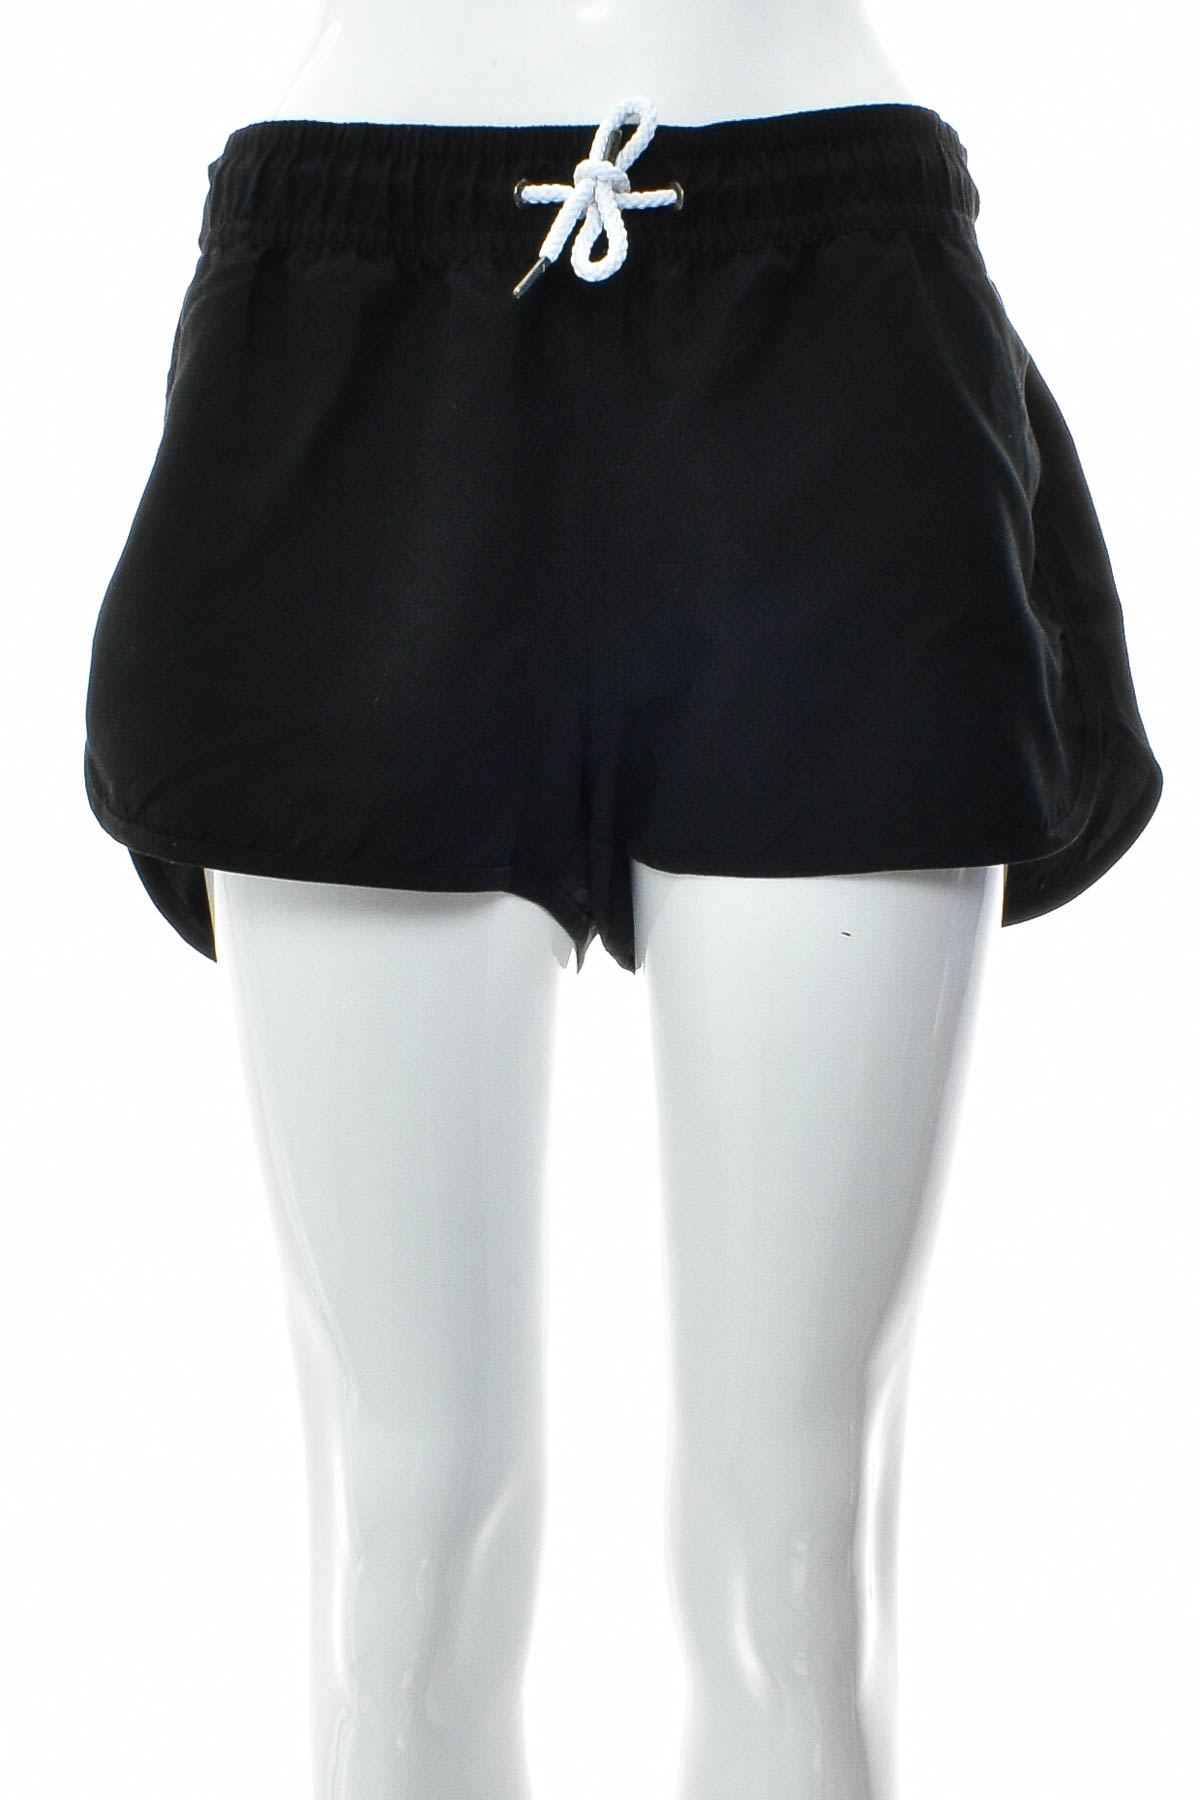 Women's shorts - Chiemsee - 0